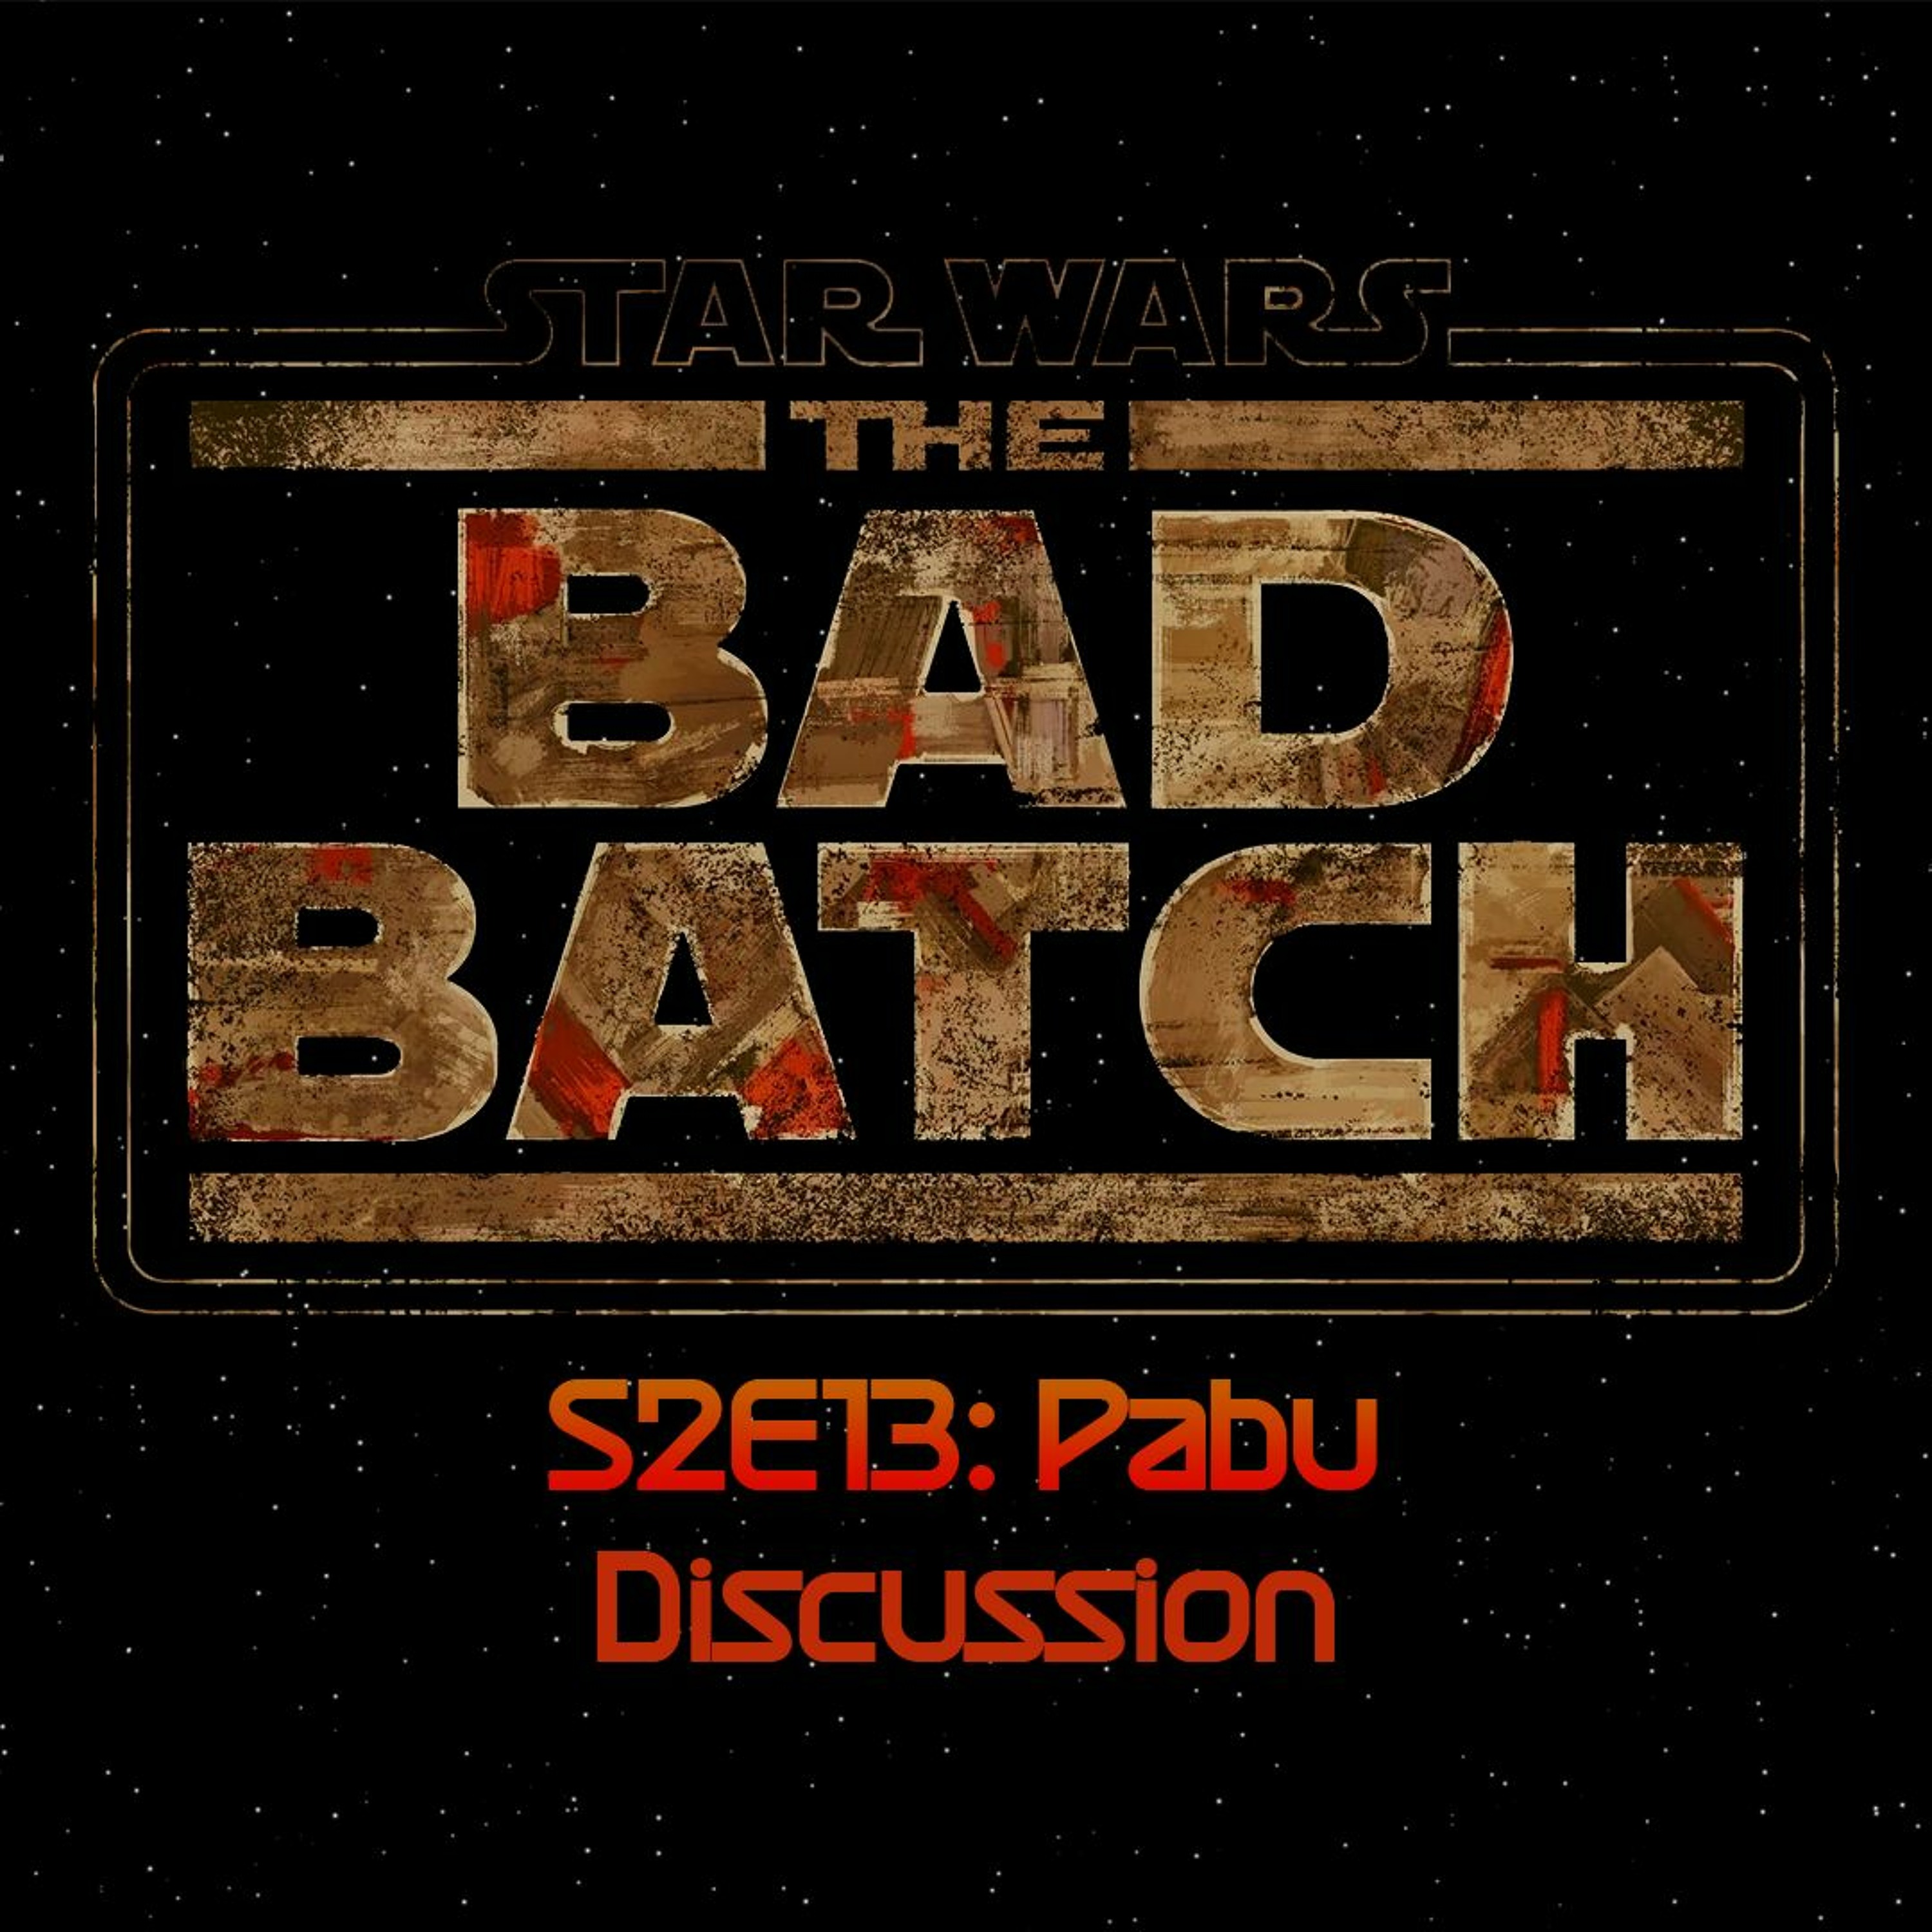 The Bad Batch S2E13: Pabu